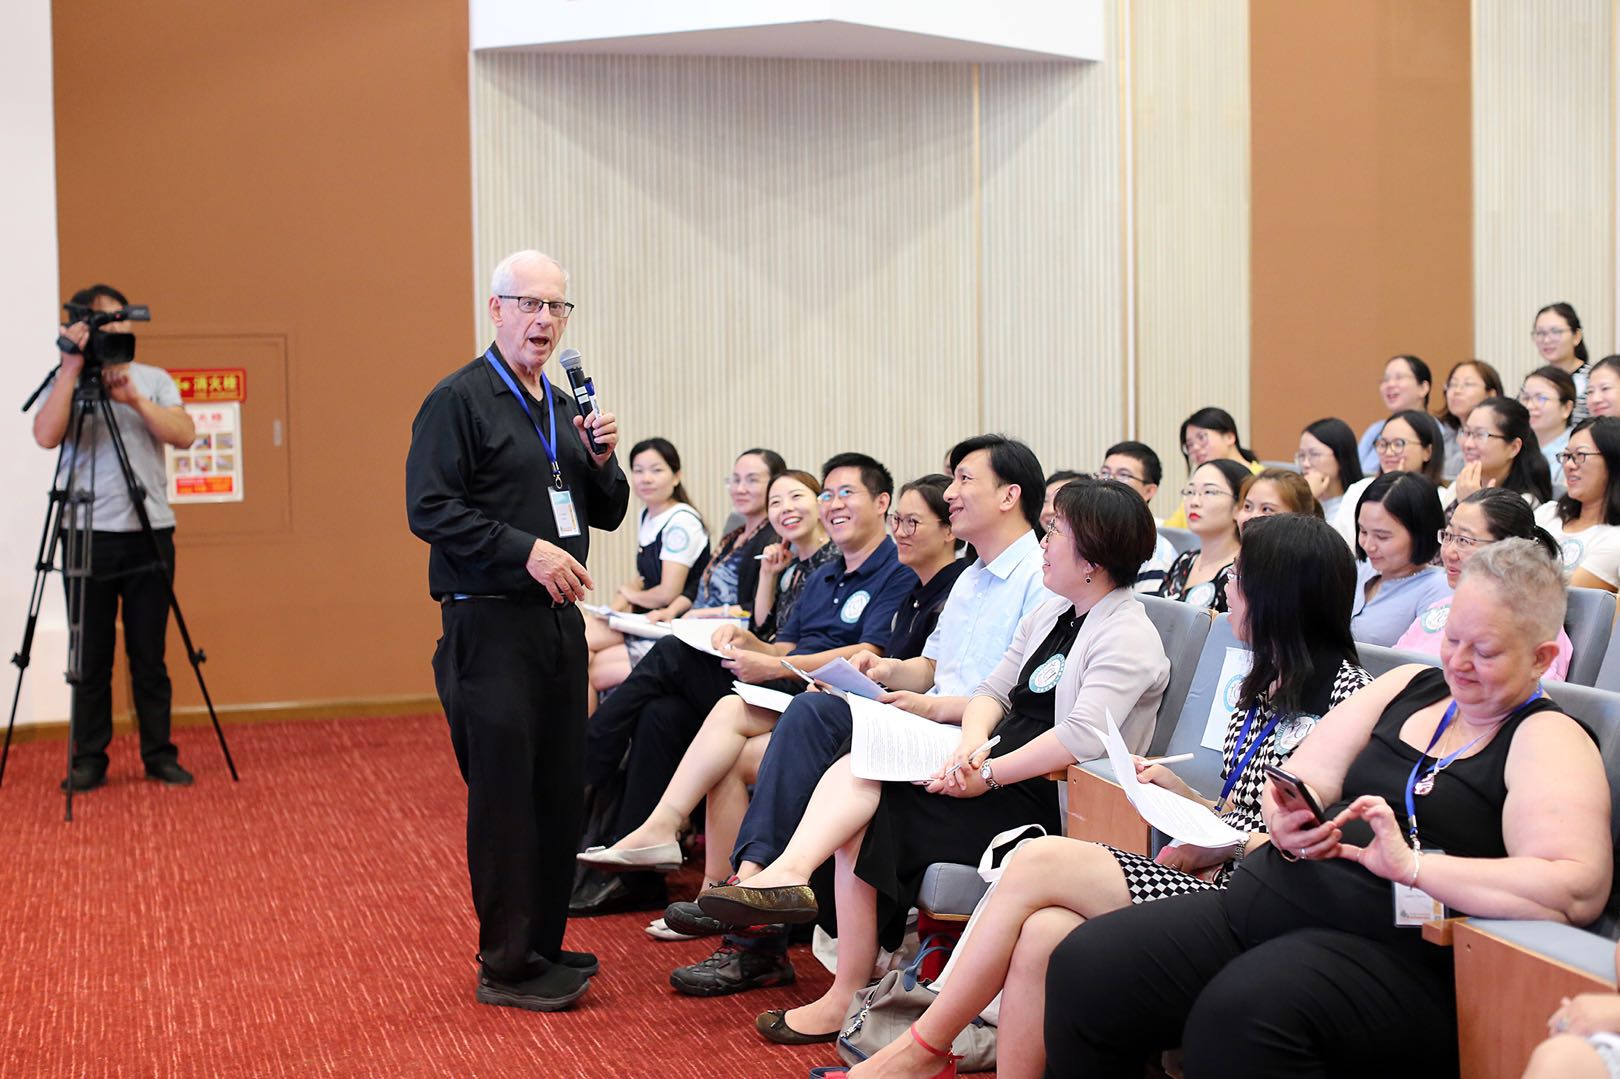 2020“阅读的力量”TCI教育交流大会（上海）